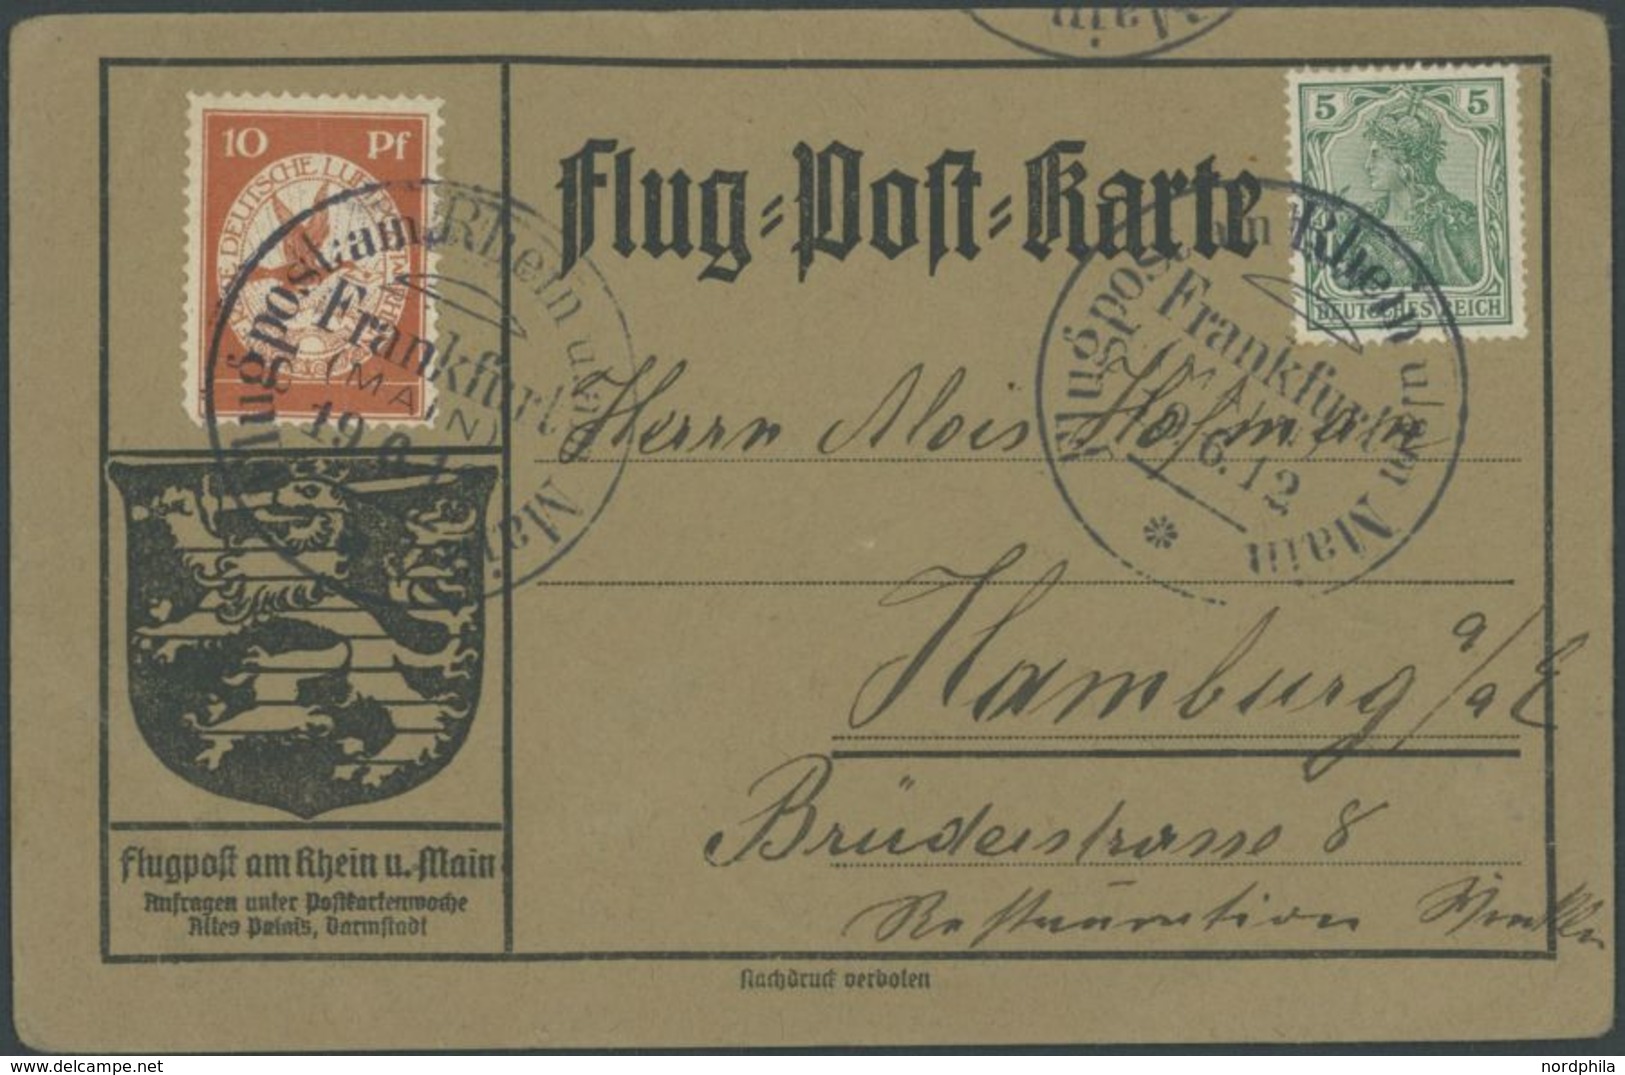 1912, 10 Pf. Flp. Am Rhein Und Main Auf Flugpostkarte Mit 5 Pf. Zusatzfrankatur, Sonderstempel Frankfurt 19.6.12, Selten - Poste Aérienne & Zeppelin